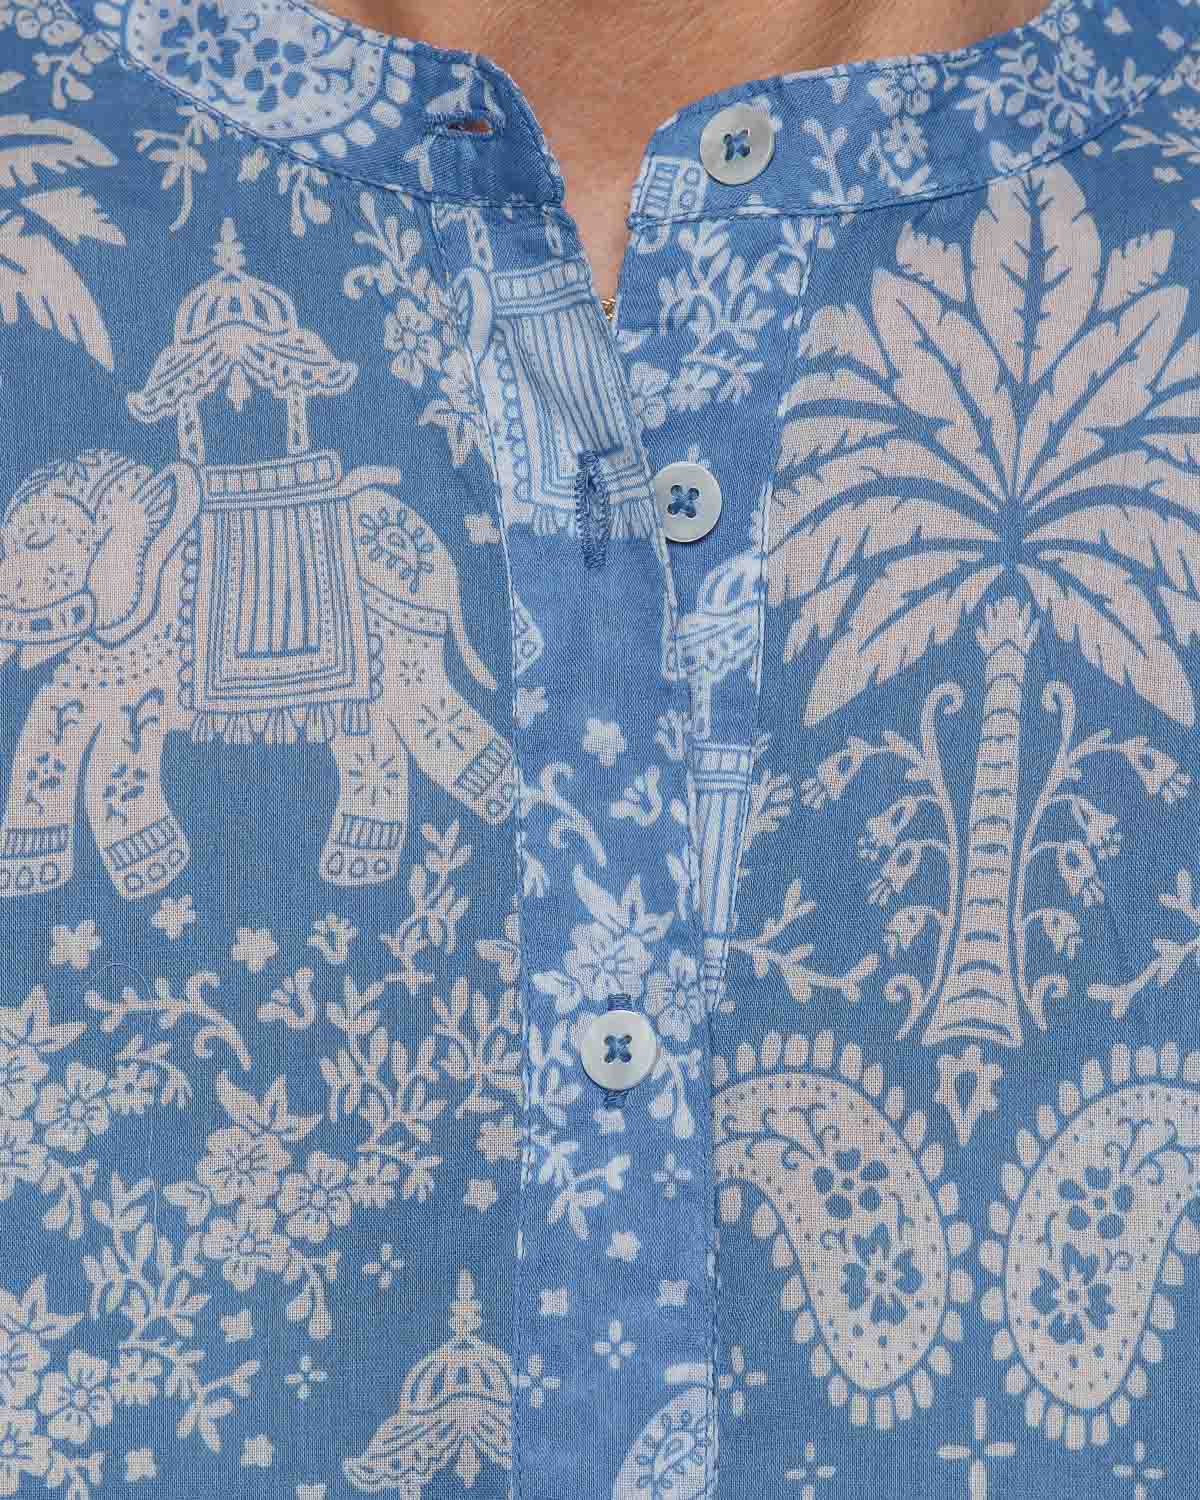 Hartford Colette Shirt in Blue Elephant Print